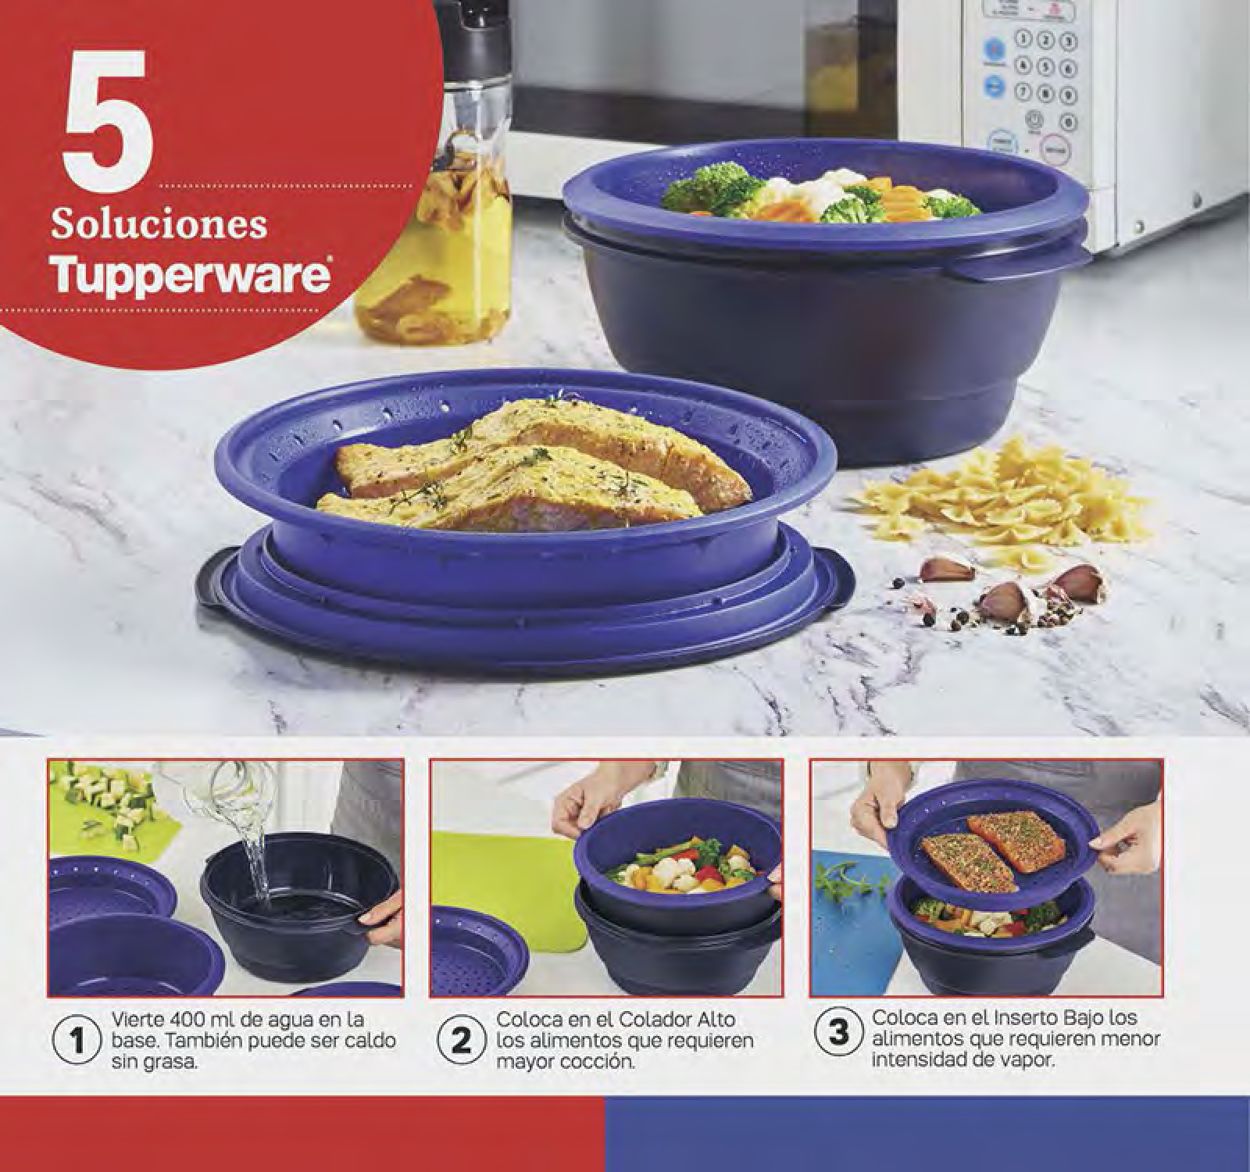 Tupperware Catálogo desde 23.05.2022